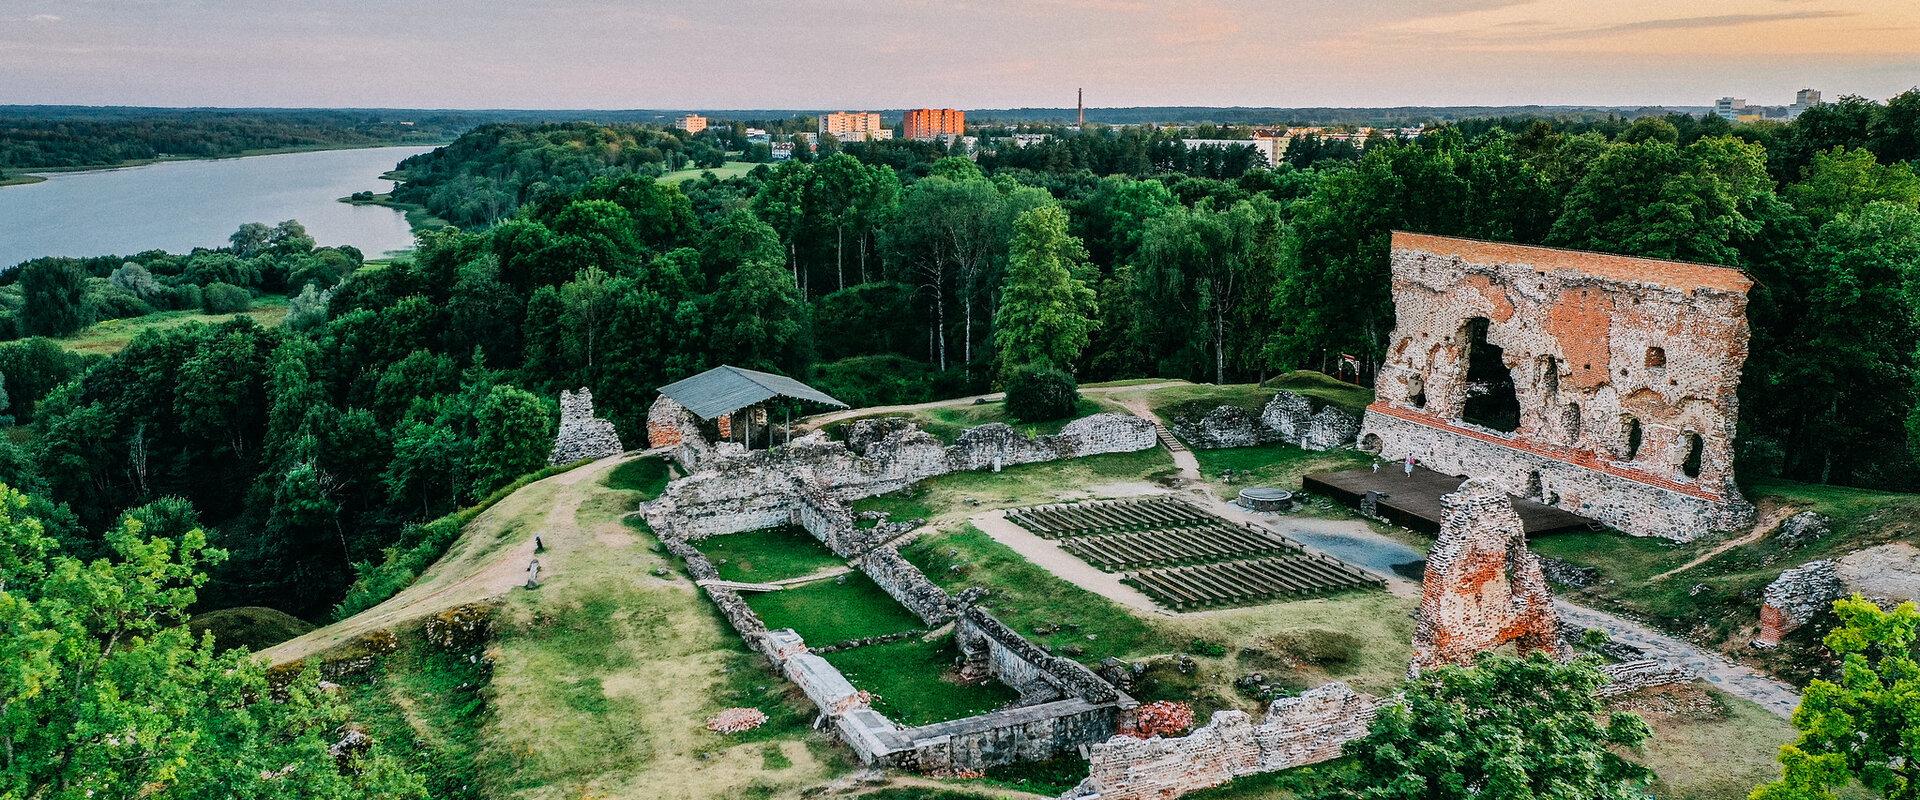 Die Ruinen der Ordenburg von Viljandi